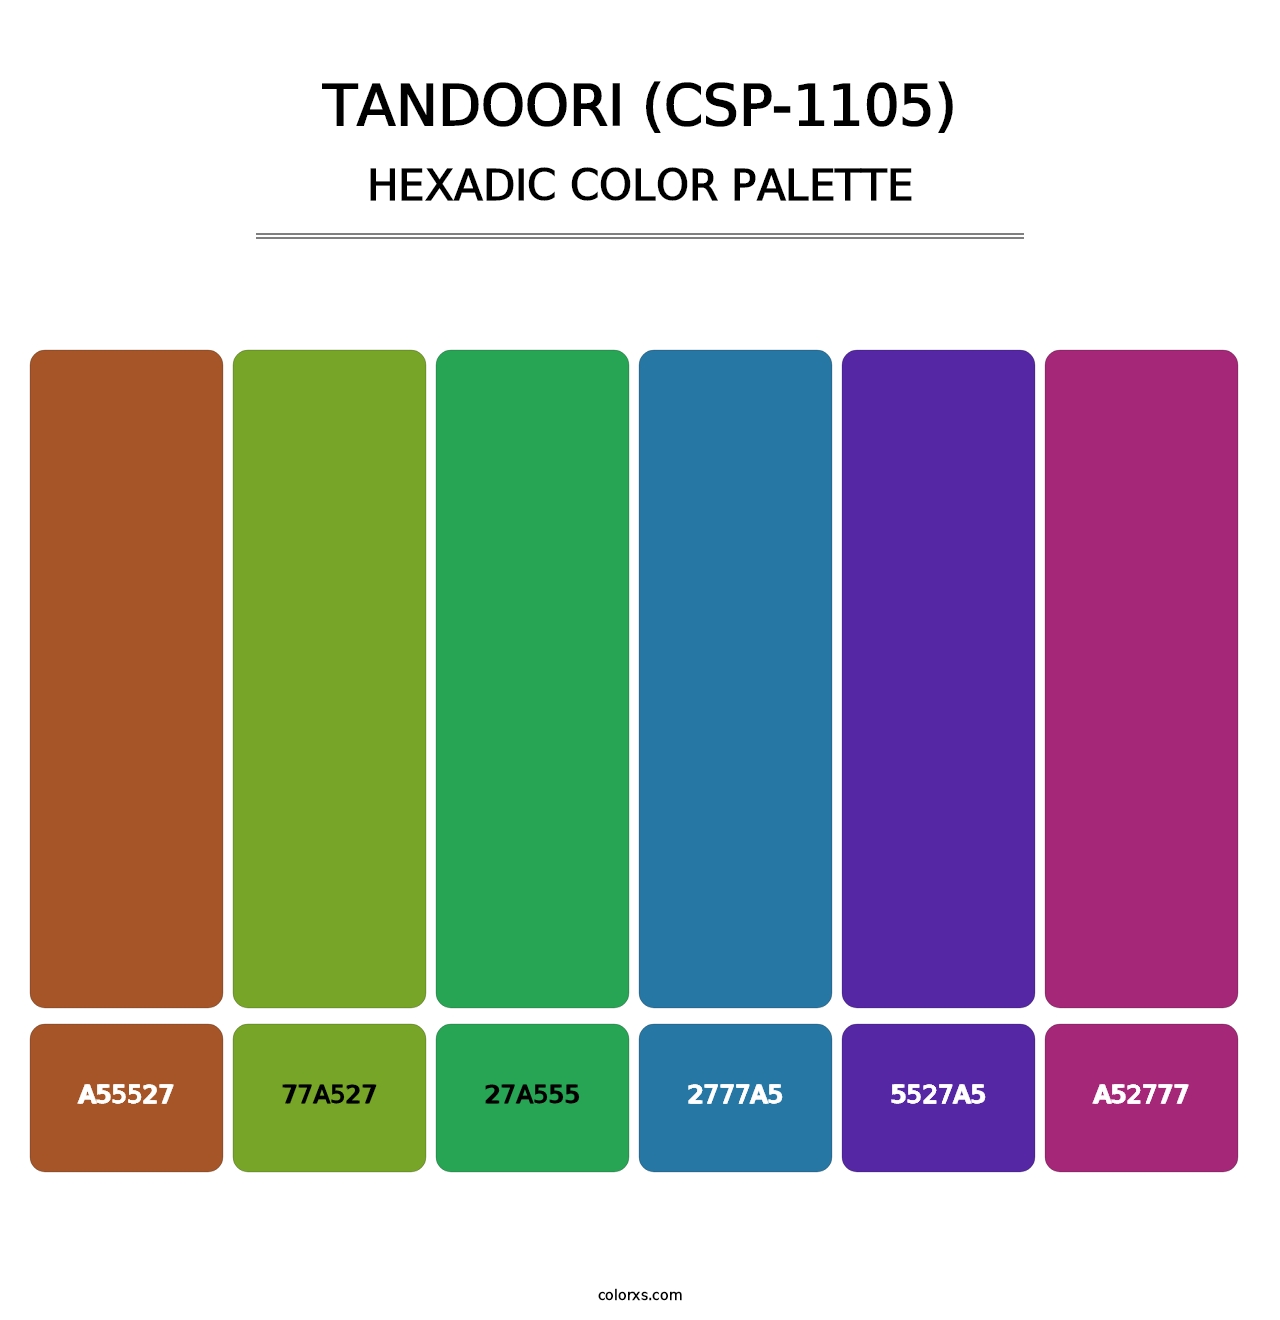 Tandoori (CSP-1105) - Hexadic Color Palette